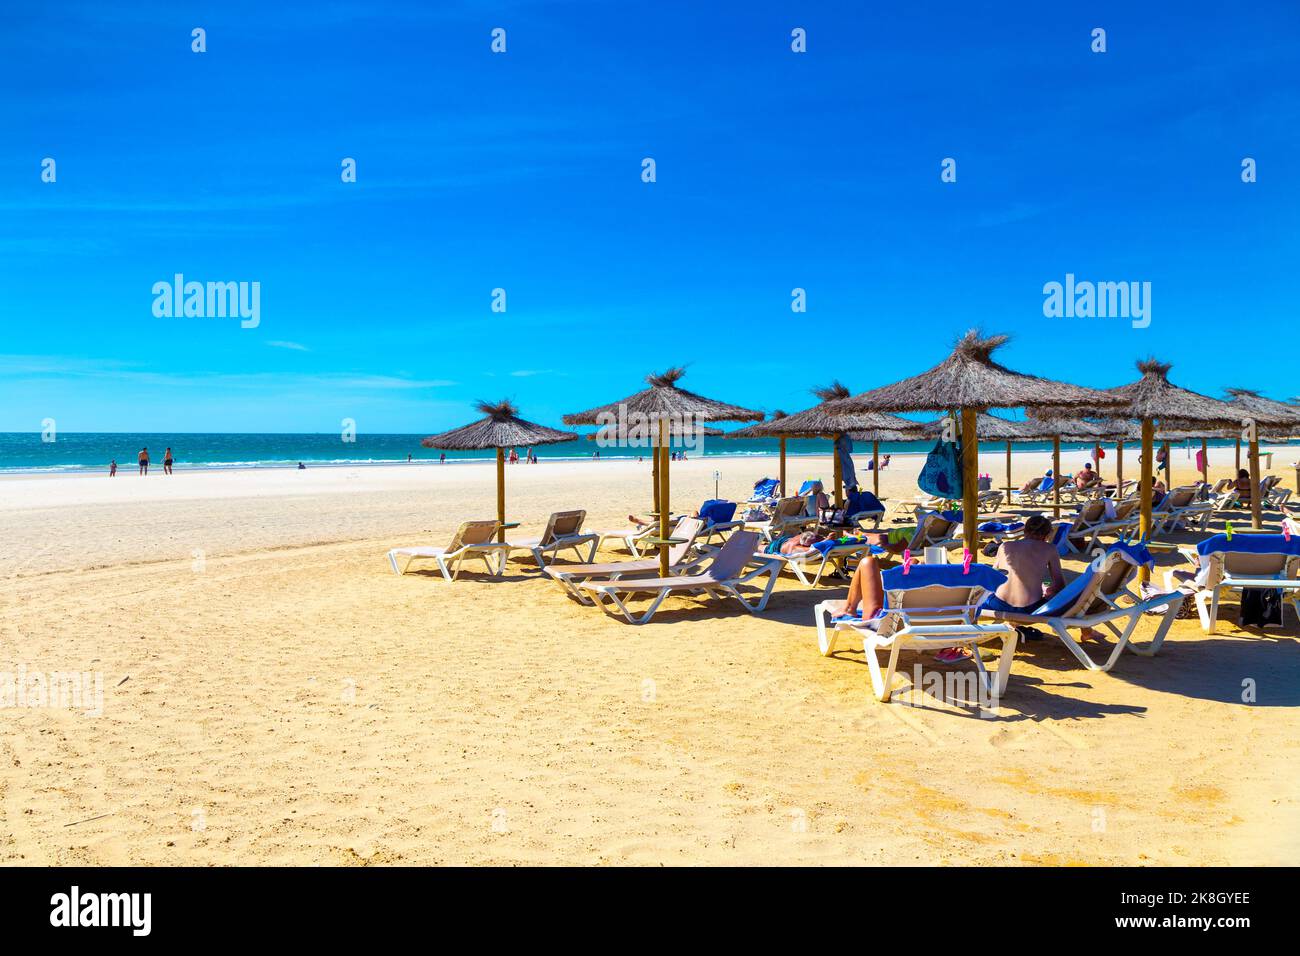 Strohsonnenschirme und Menschen auf Liegestühlen am Playa de la Barrosa, Cadaz, Spanien Stockfoto